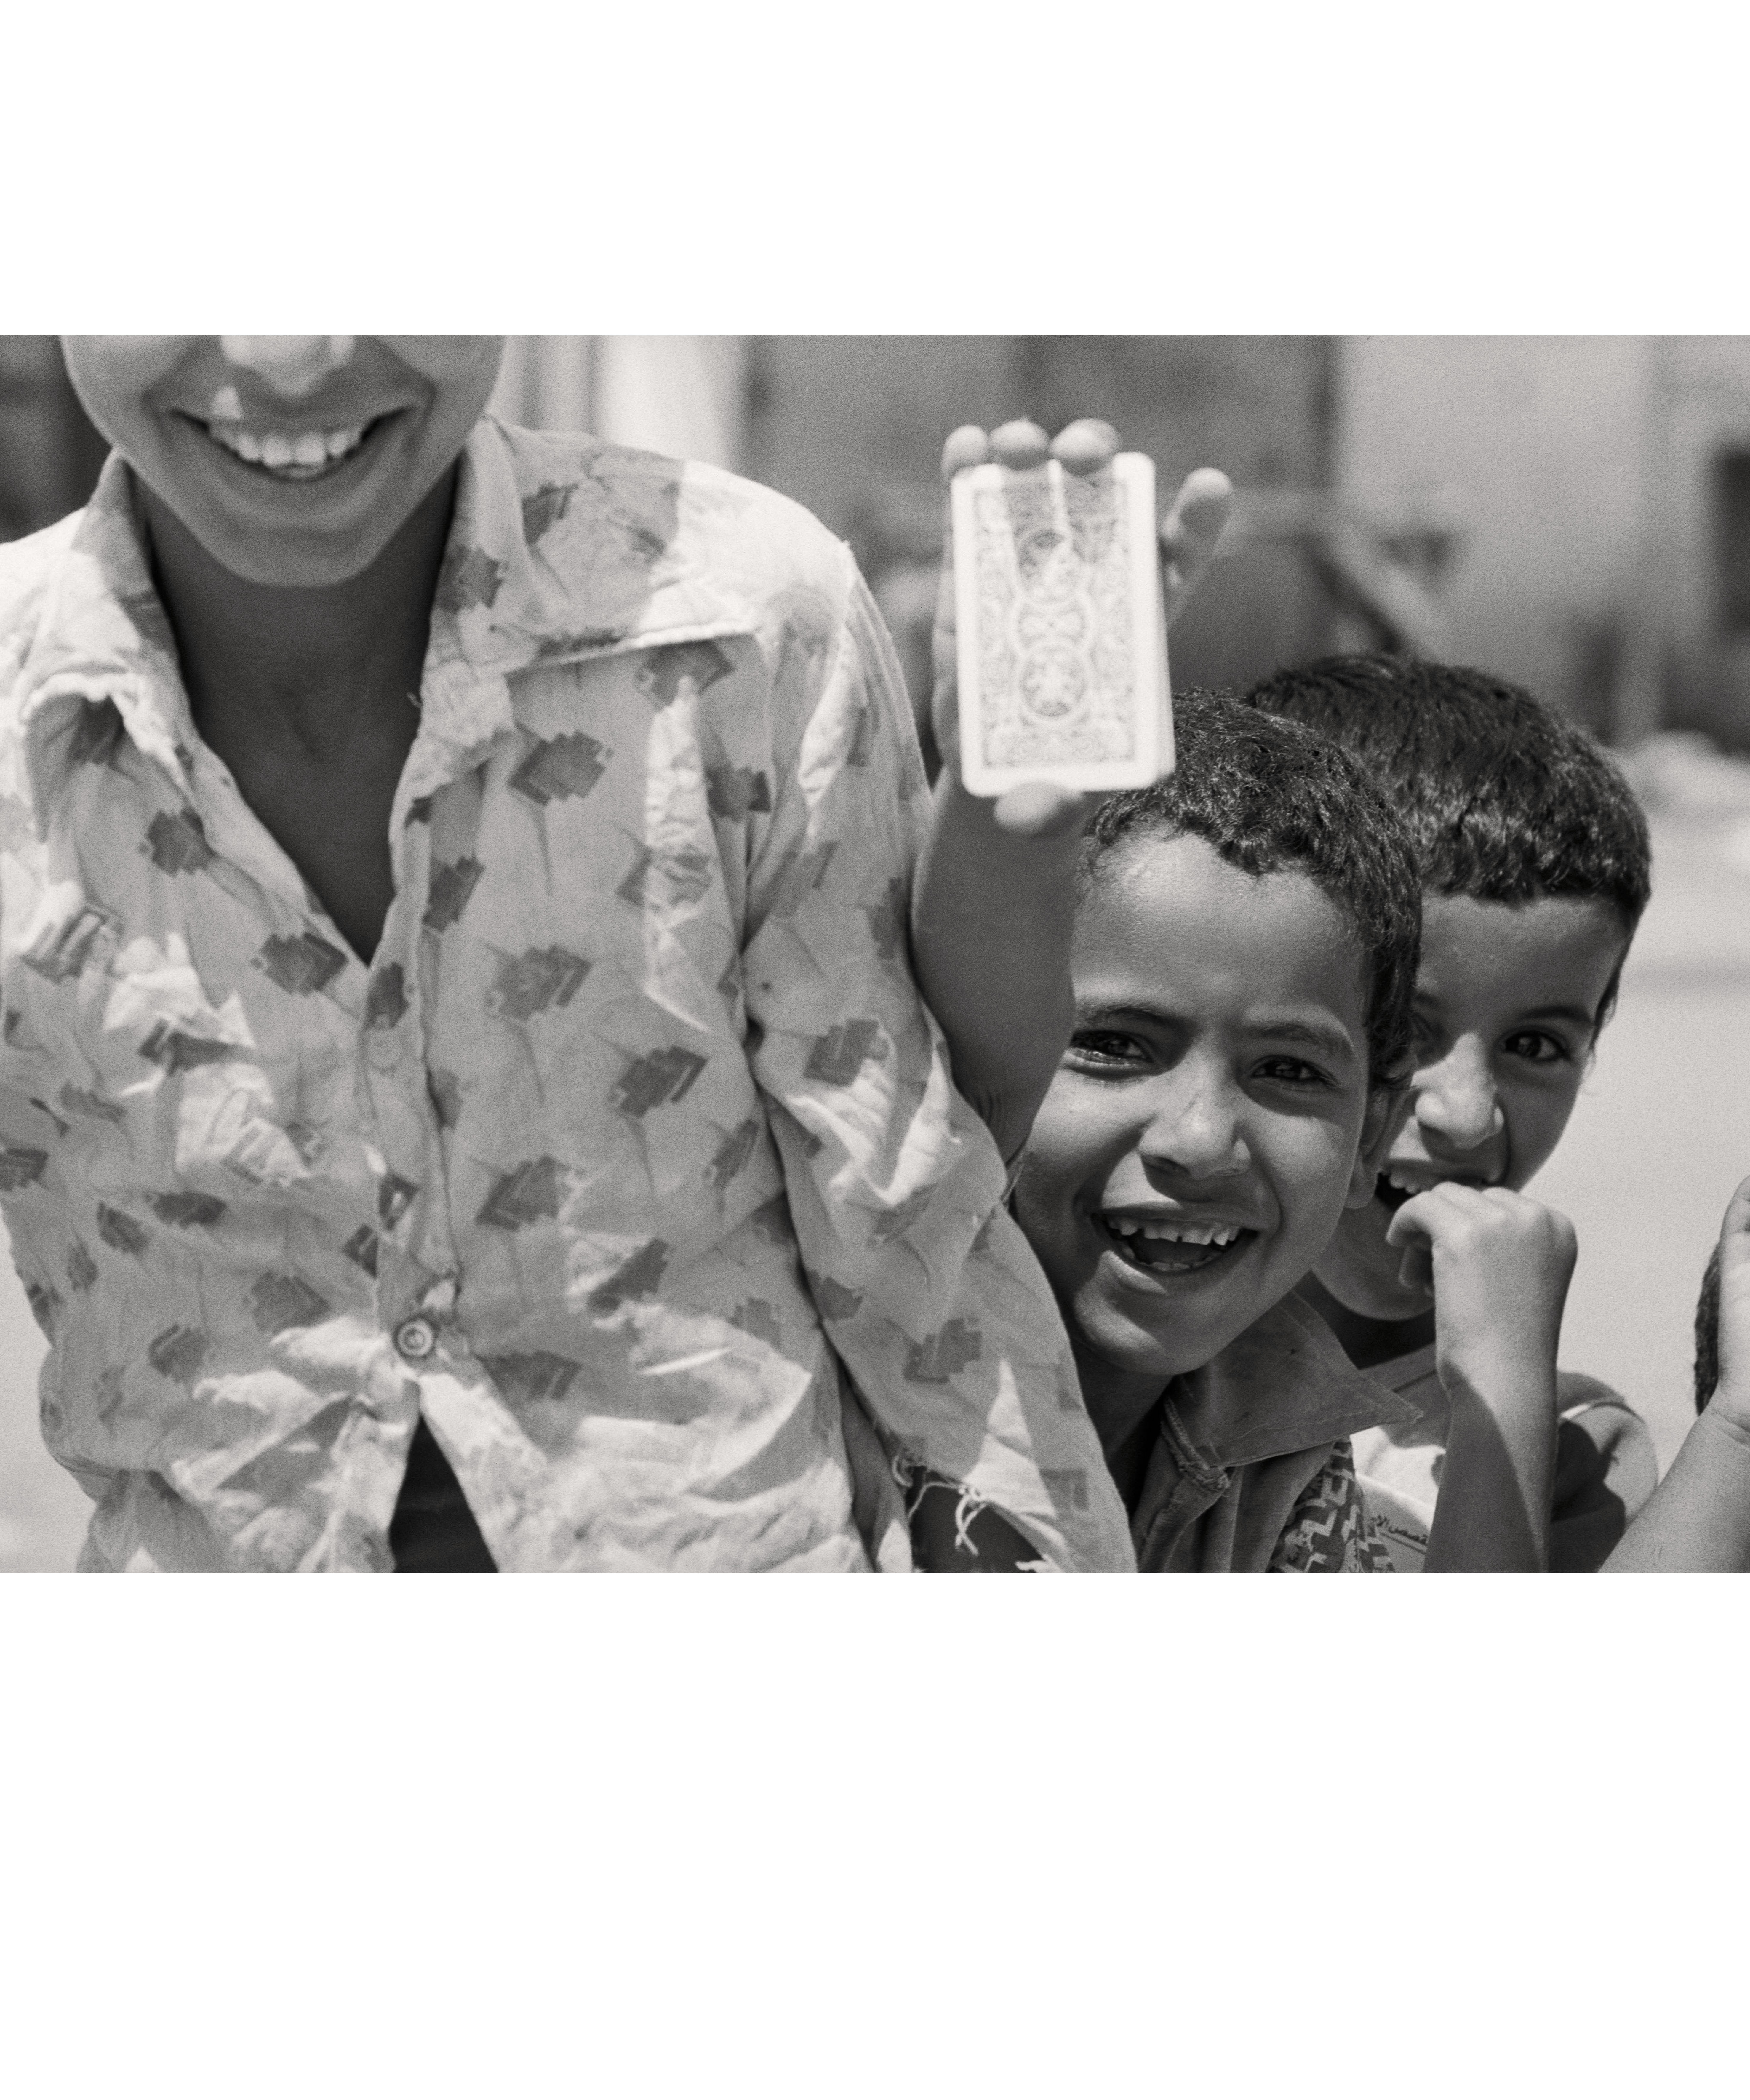 Bambini profughi palestinesi ridono e mostrano un mazzo di carte da gioco